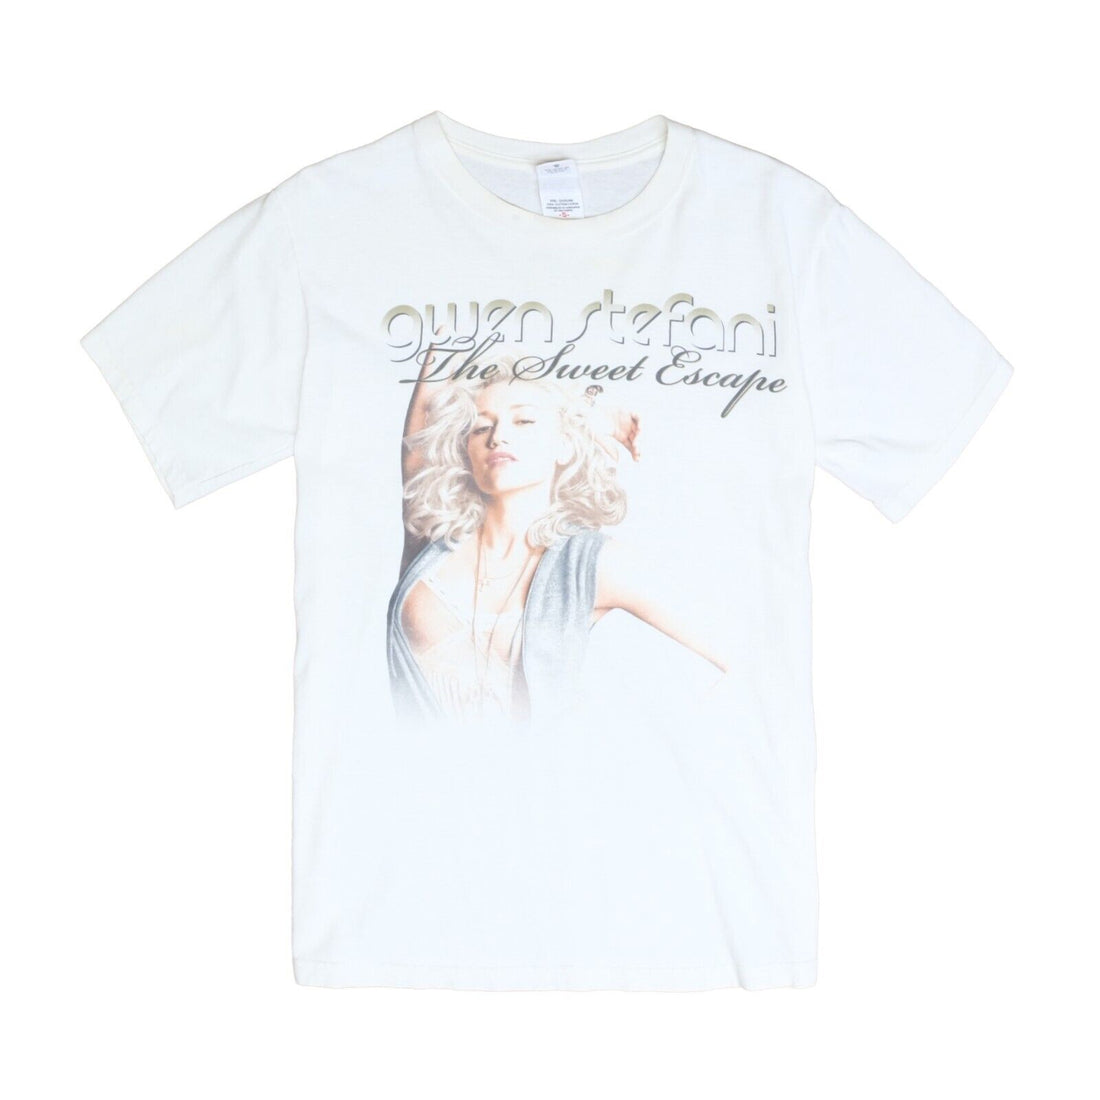 Gwen Stefani The Sweet Escape Tour T-Shirt Size Small Pop Music 2007